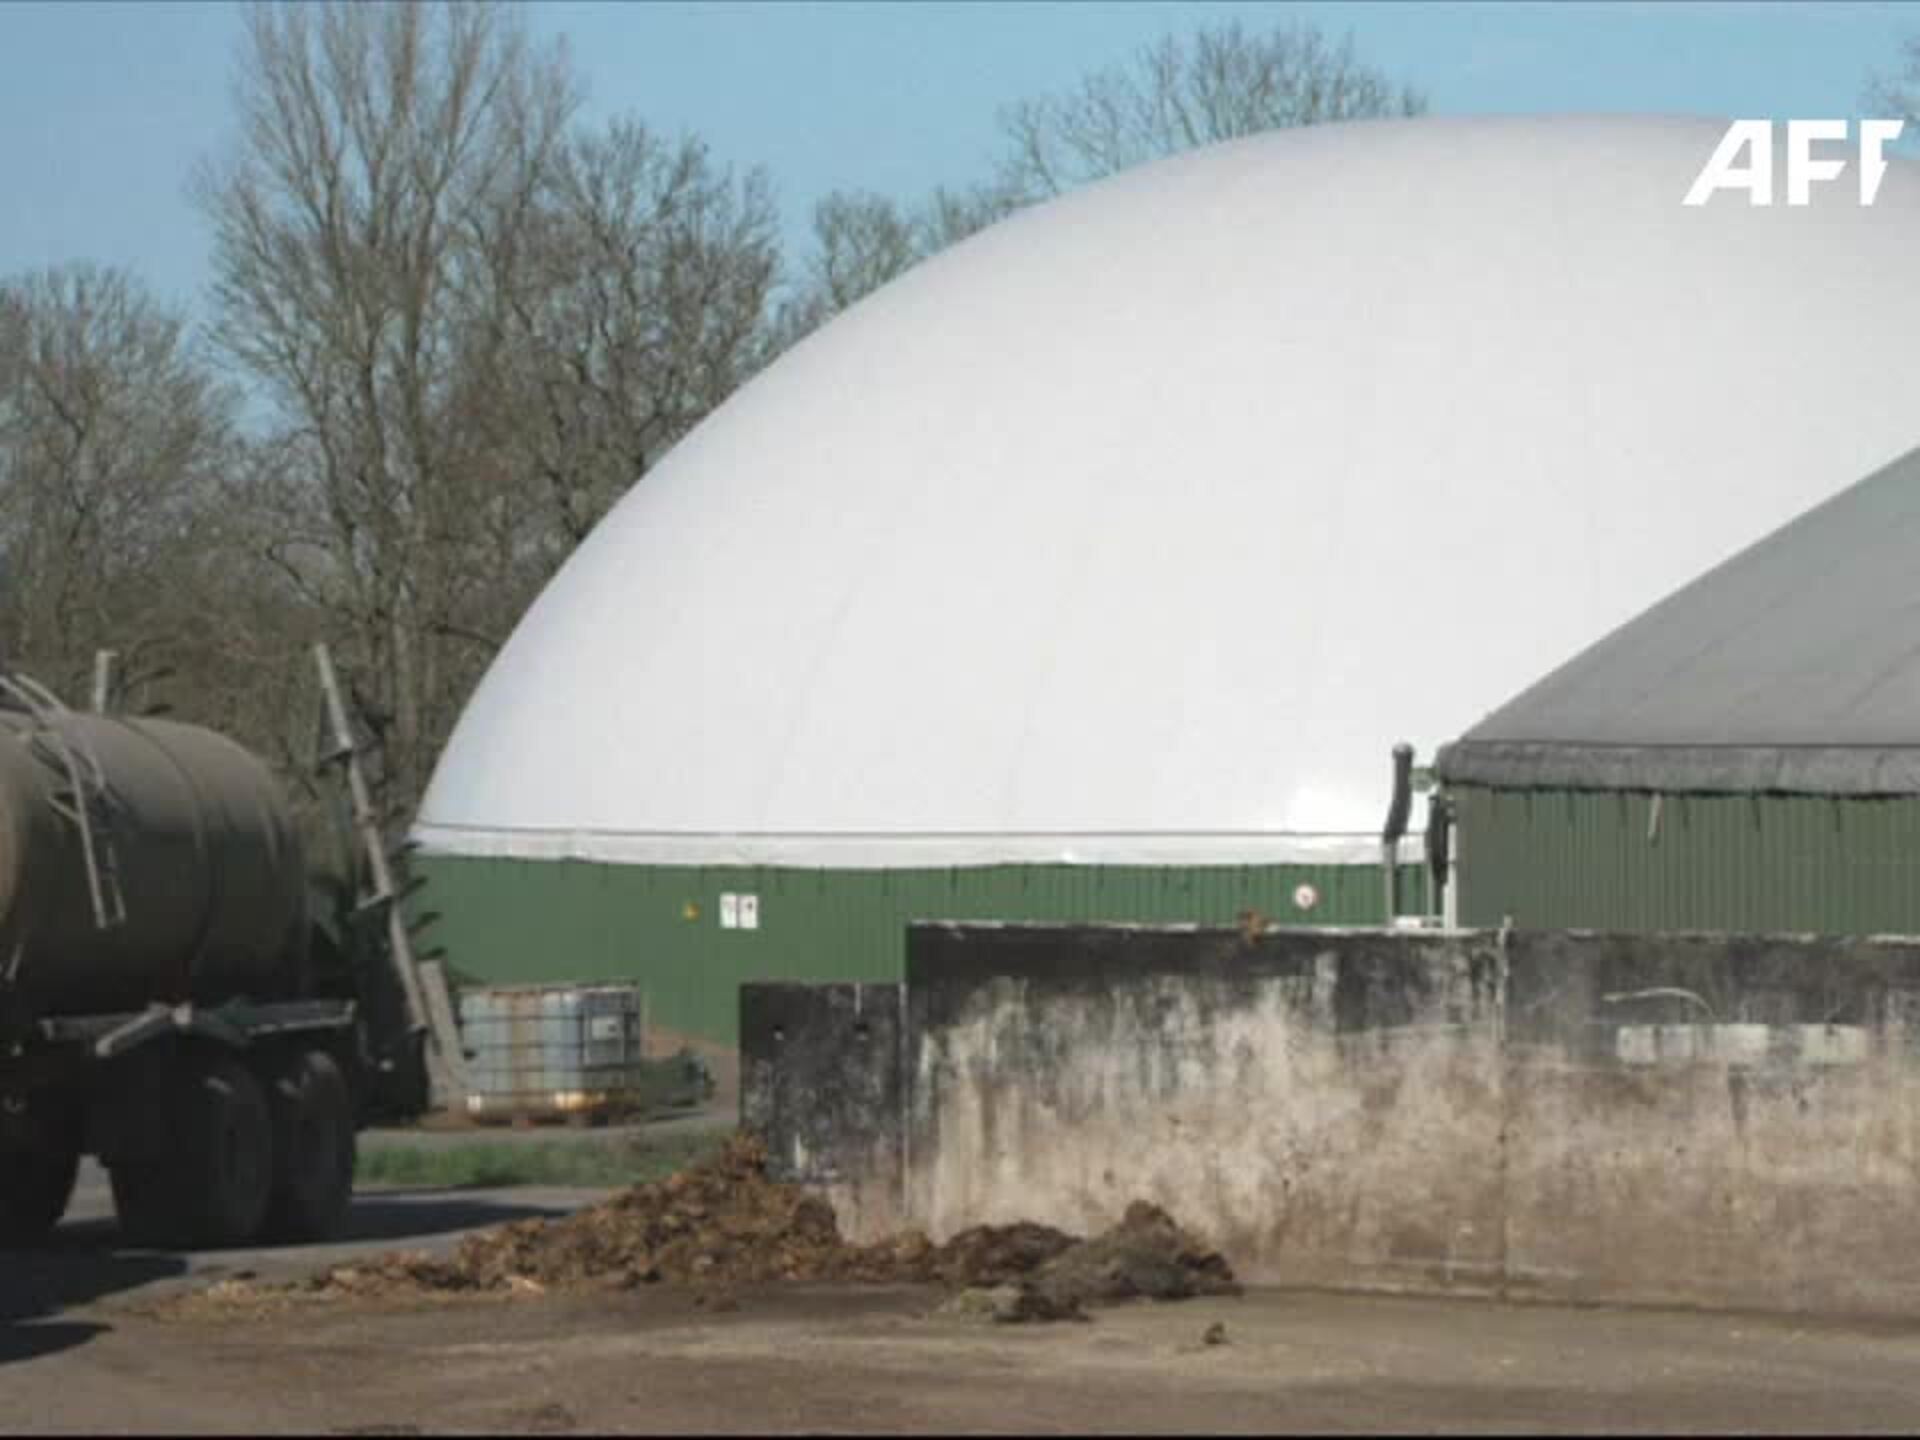 Heizung: Biogas als Alternative? Warum selbst das Bundesumweltamt warnt